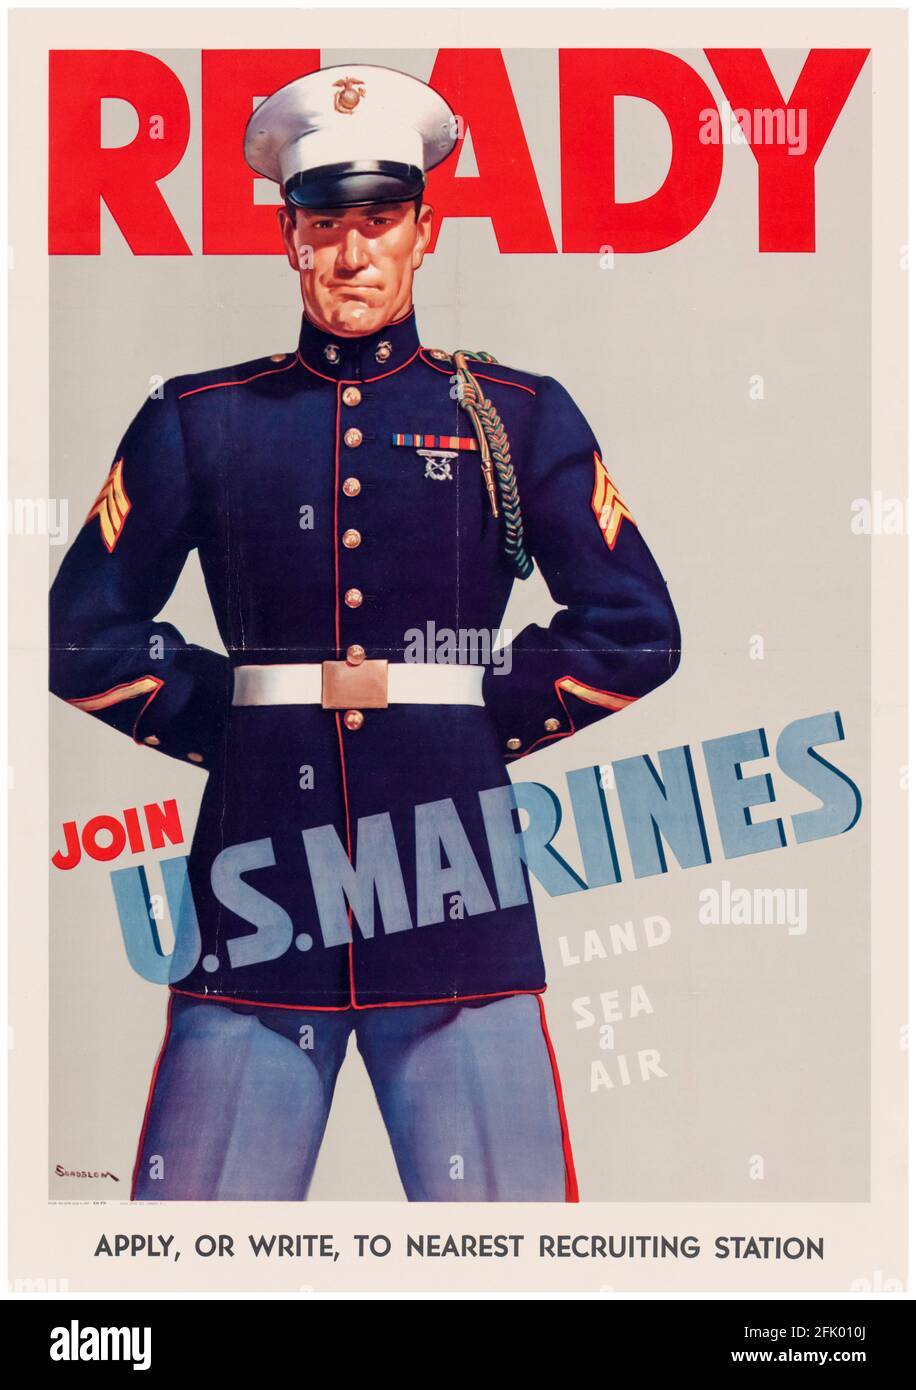 US-Amerikaner, Plakat zur Rekrutierung militärischer Truppen aus dem 2. Weltkrieg, Ready, Join US Marines, (USMC), 1942-1945 Stockfoto